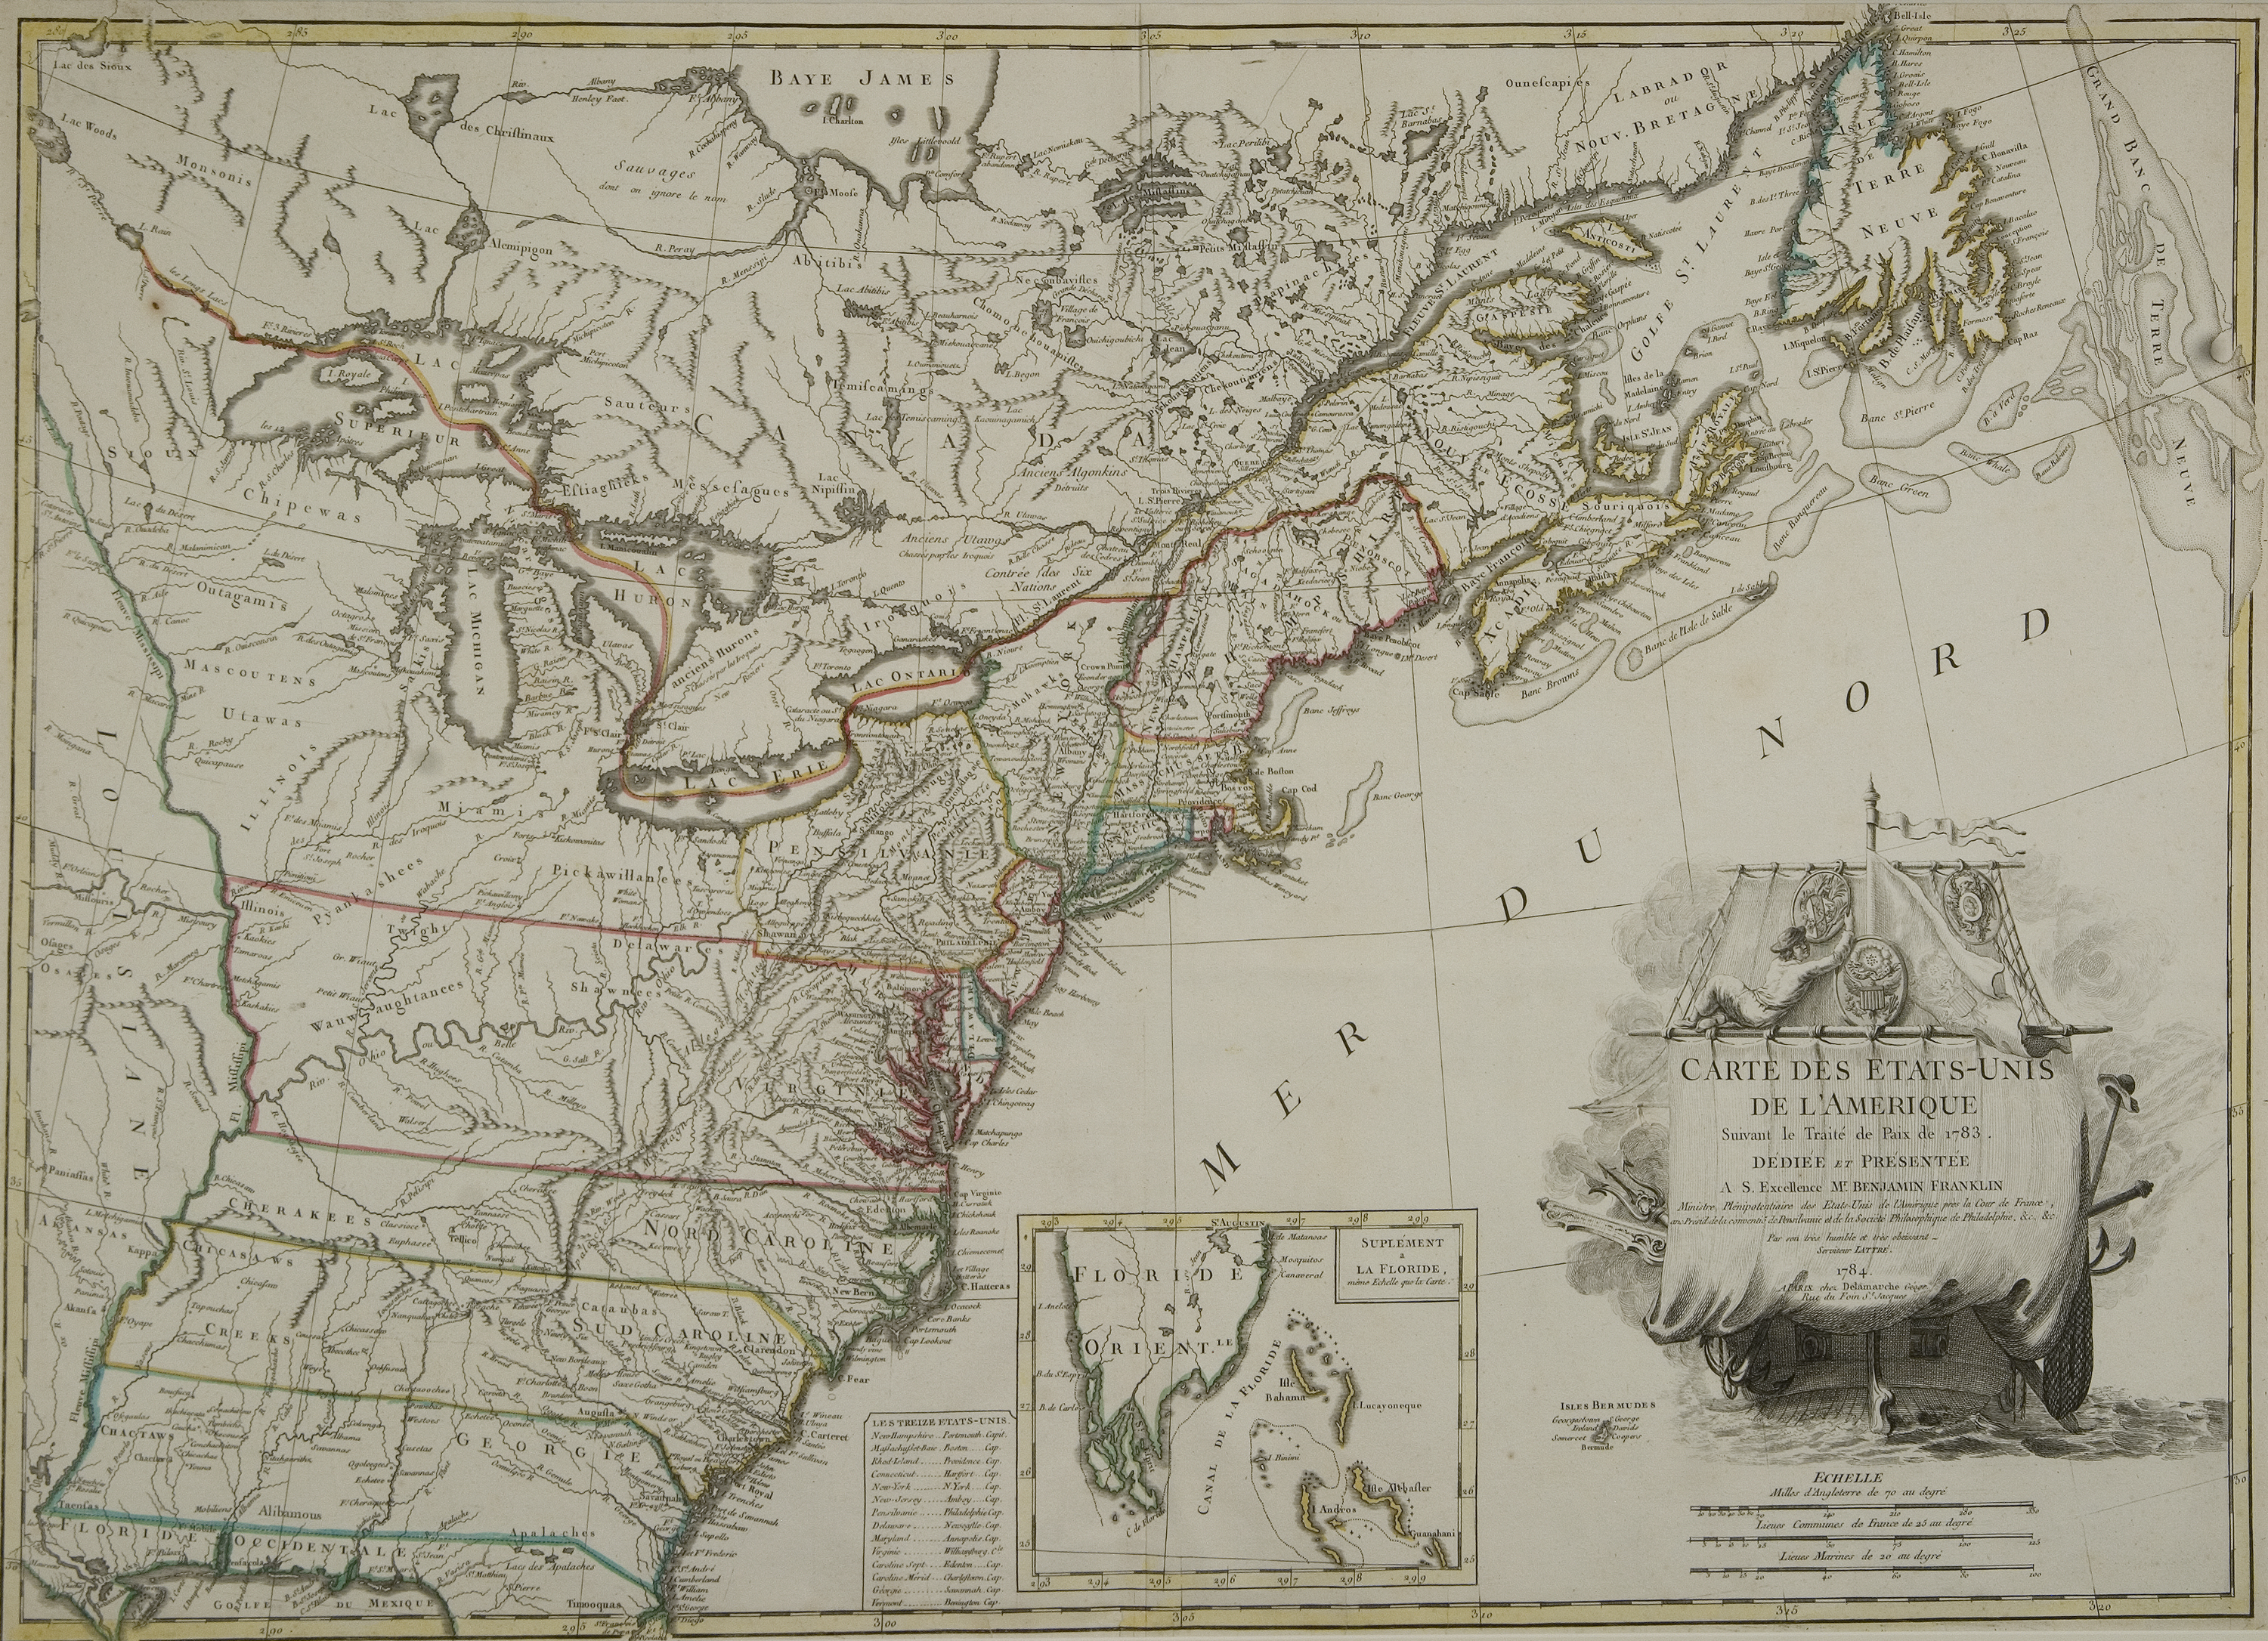 Carte des Etas-Unis de l'Amerique suivant le Traite de Paix de 1783, 1784